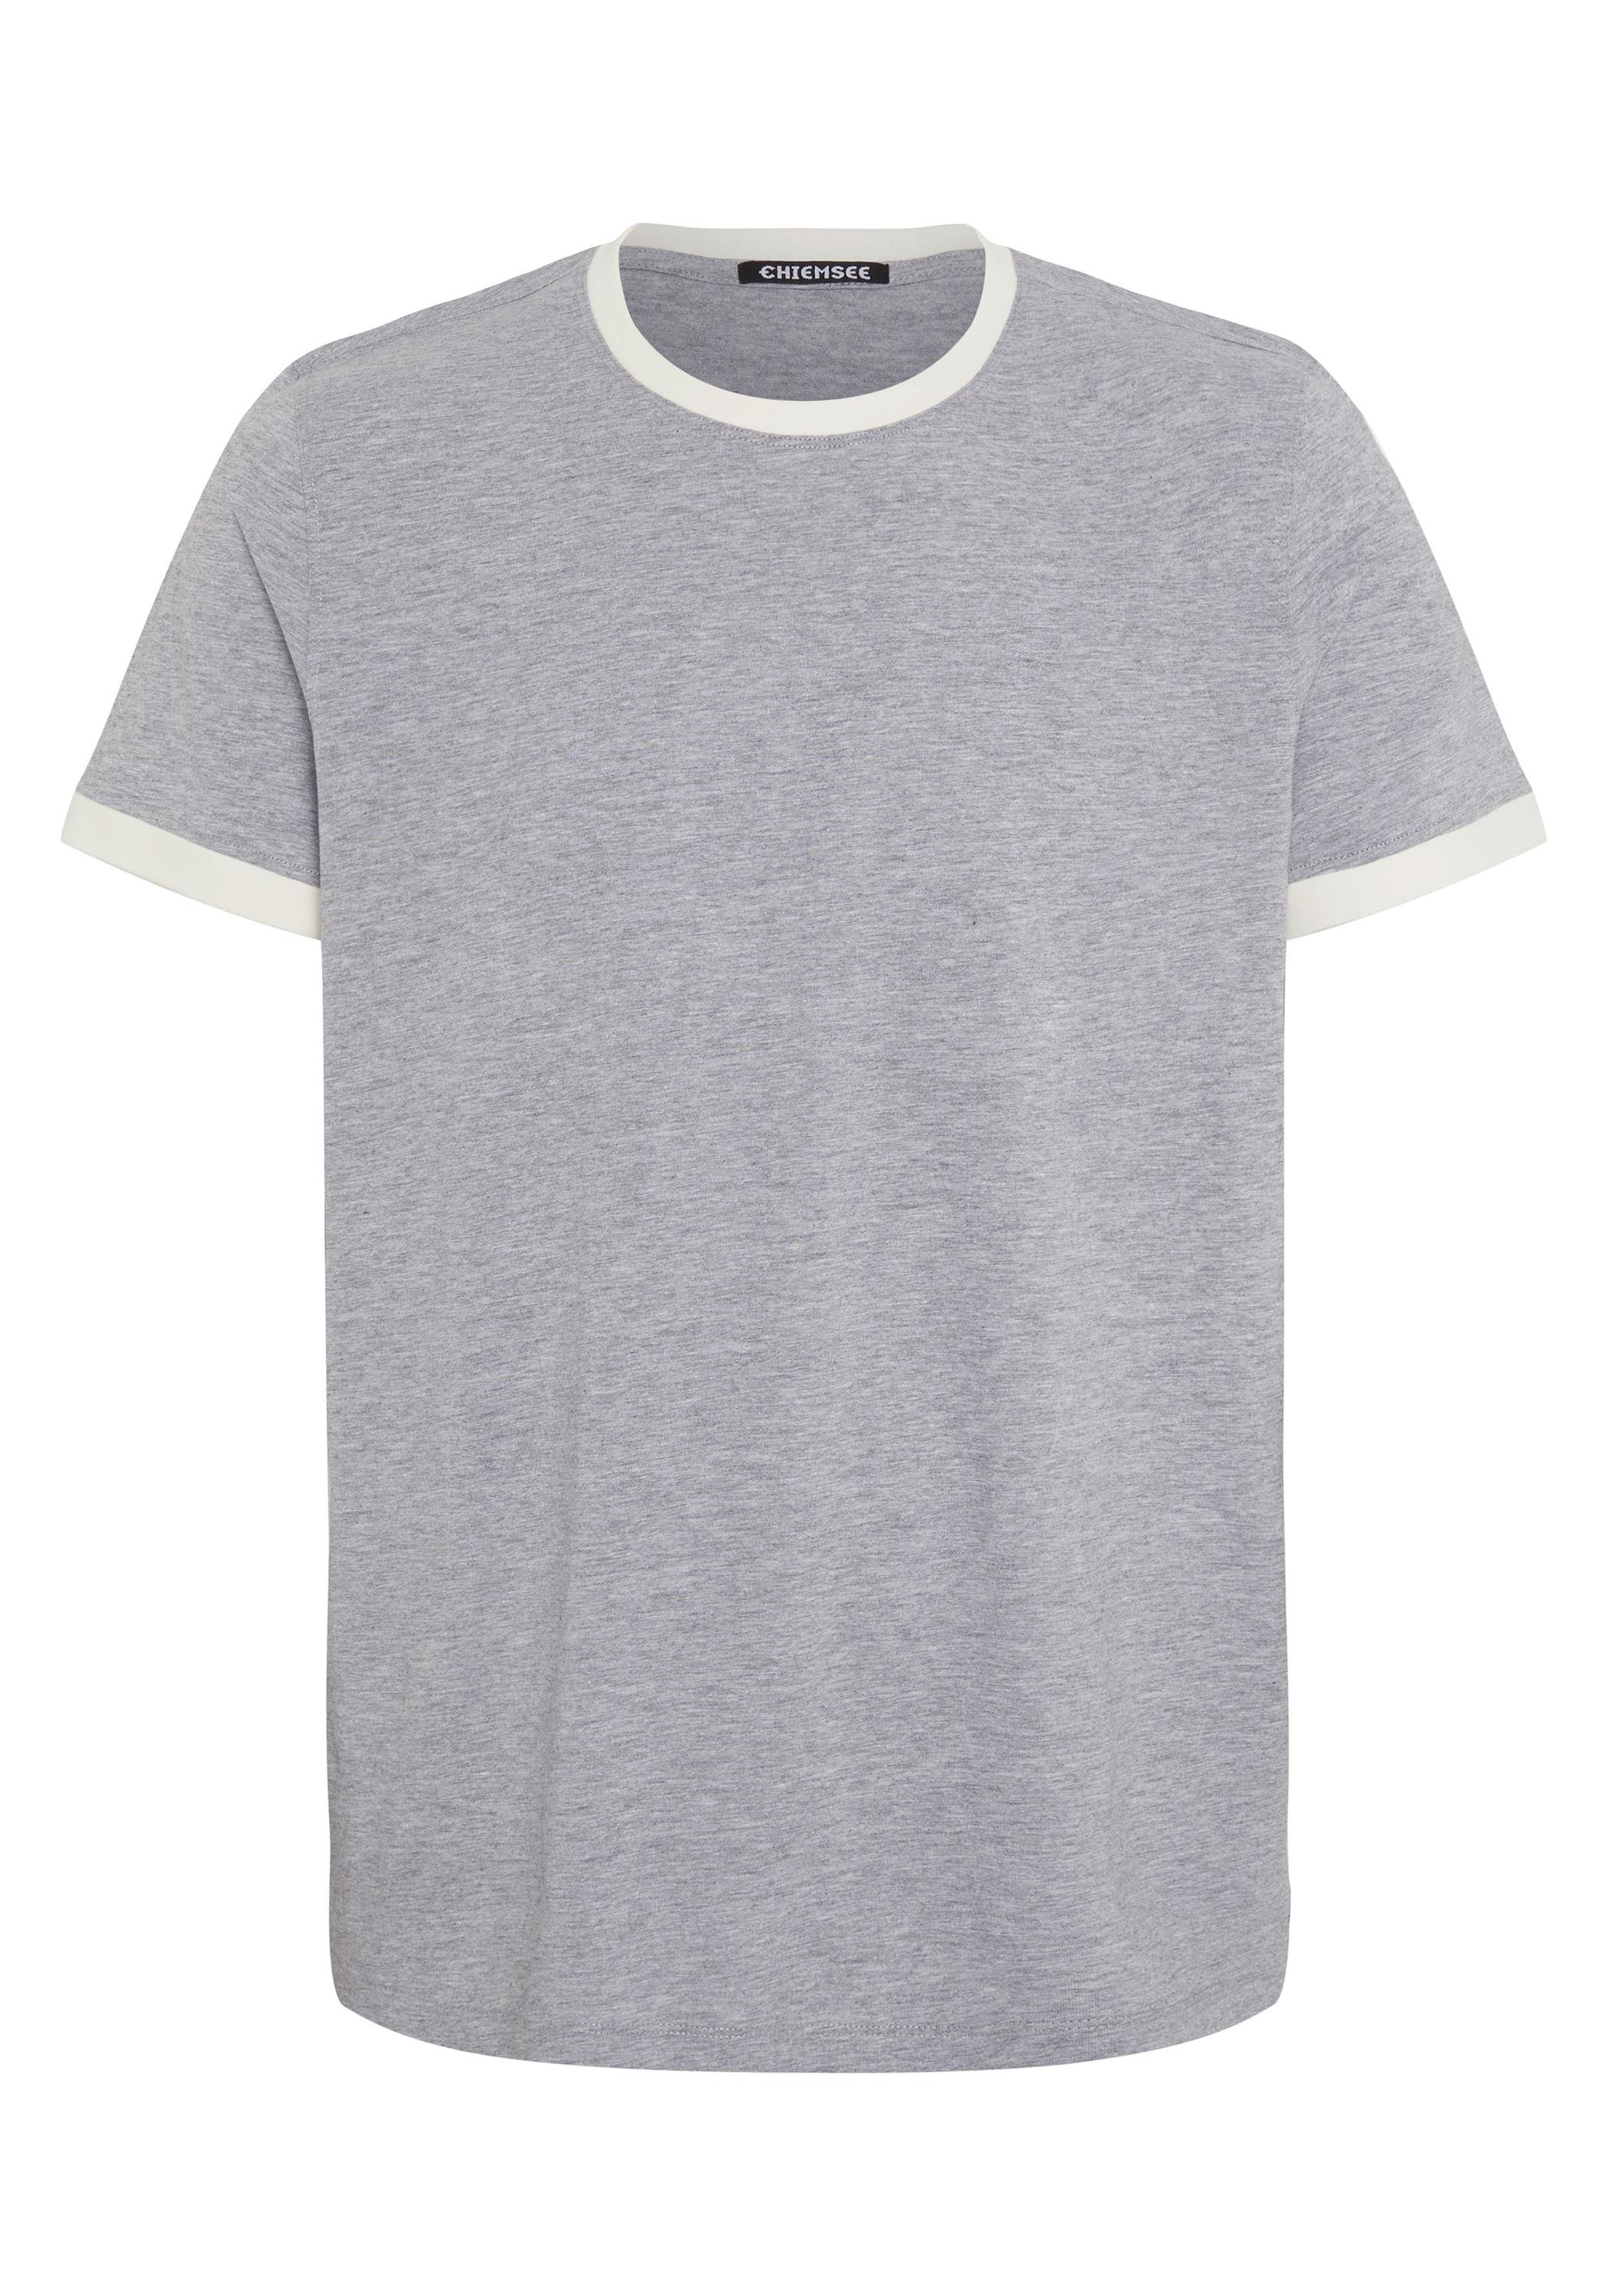 Shop von 17-4402M Chiemsee SportScheck Melange im Online Shirt kaufen Neutral T-Shirt Gray Herren